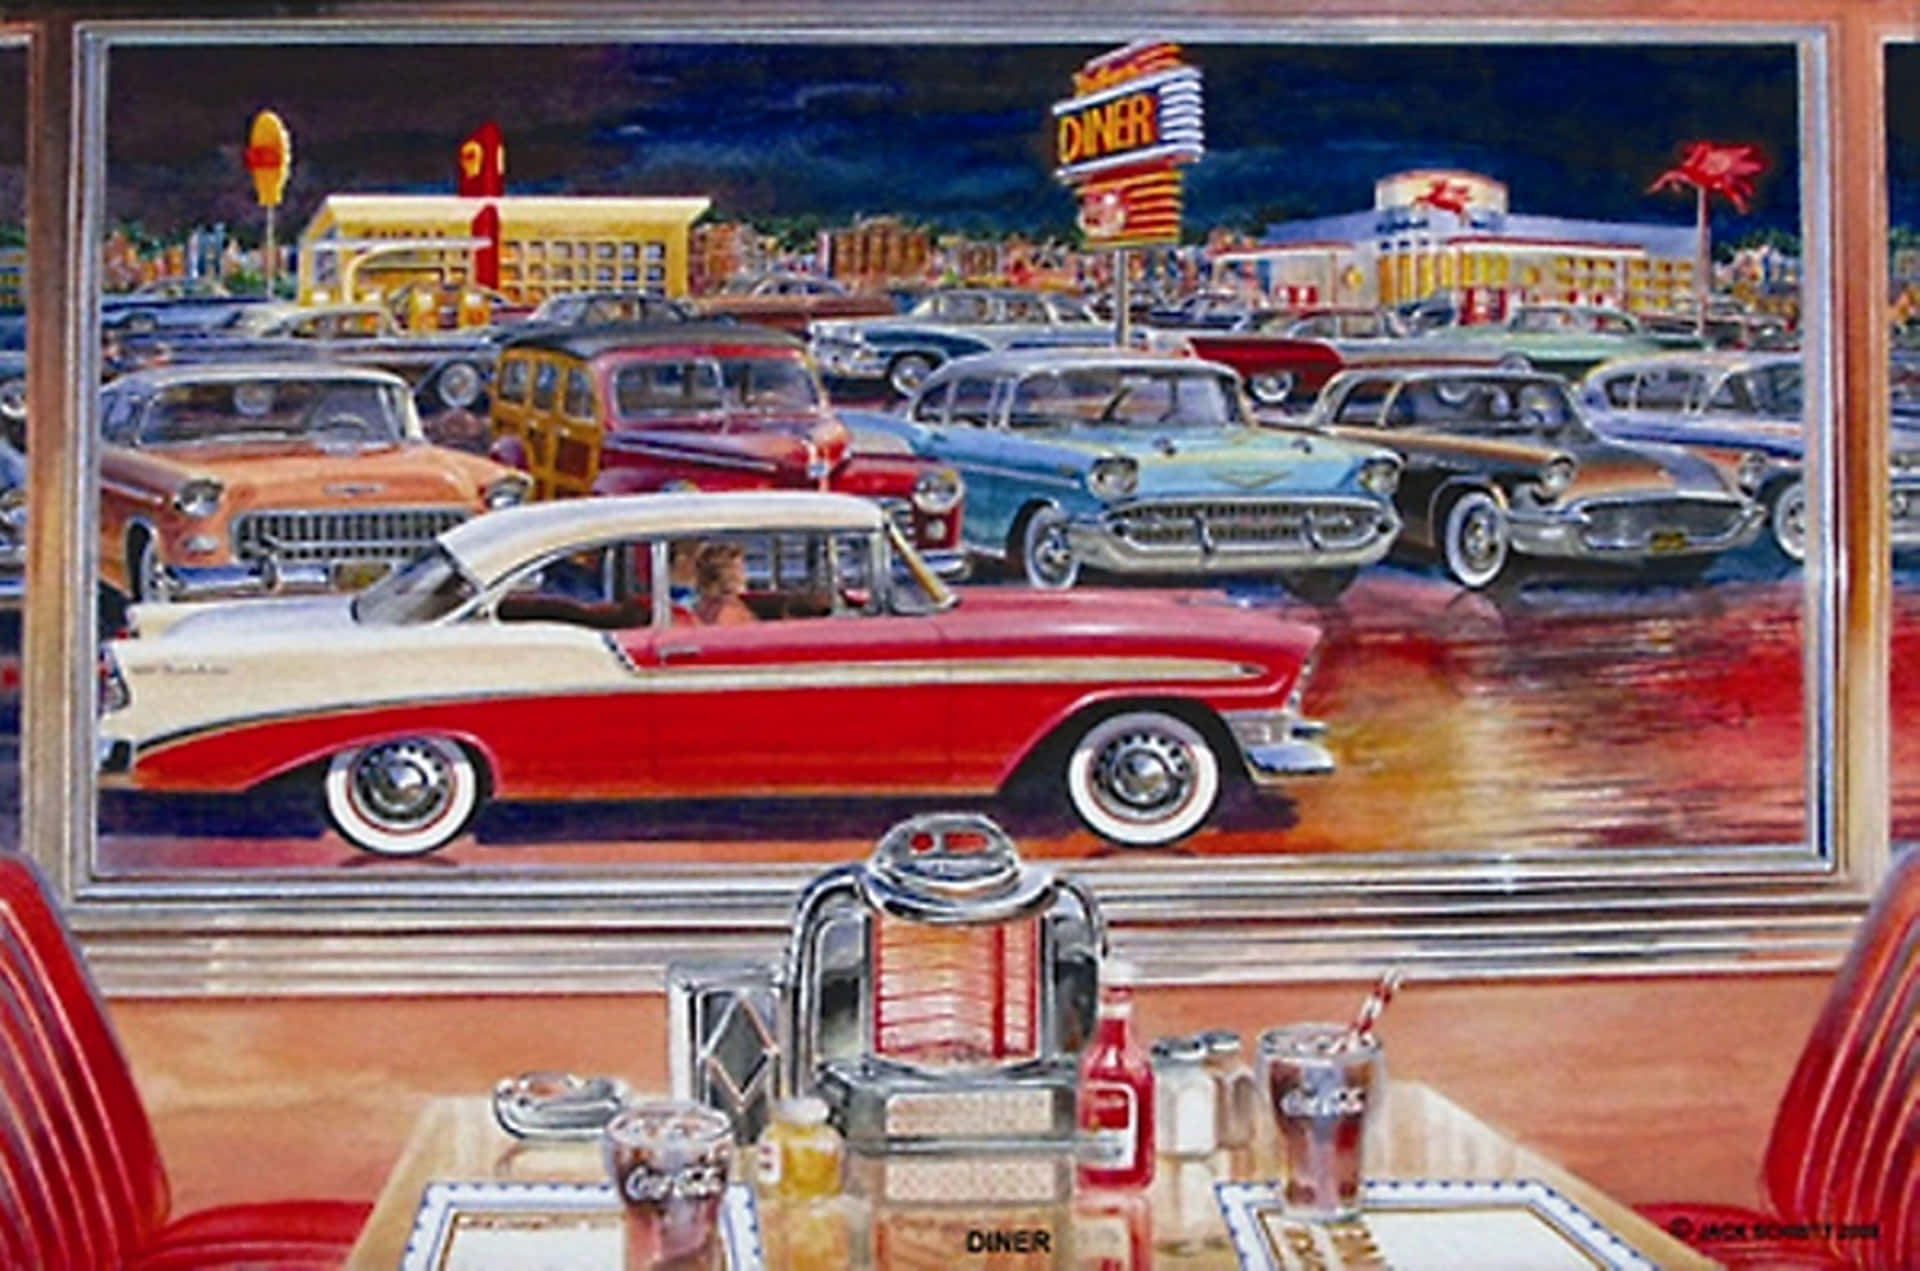 Retro Diner Vintage Biler Tapet: En blanding af retrofarvede amerikanske diner biler kombineret med et smukt vintage farvemønster. Wallpaper